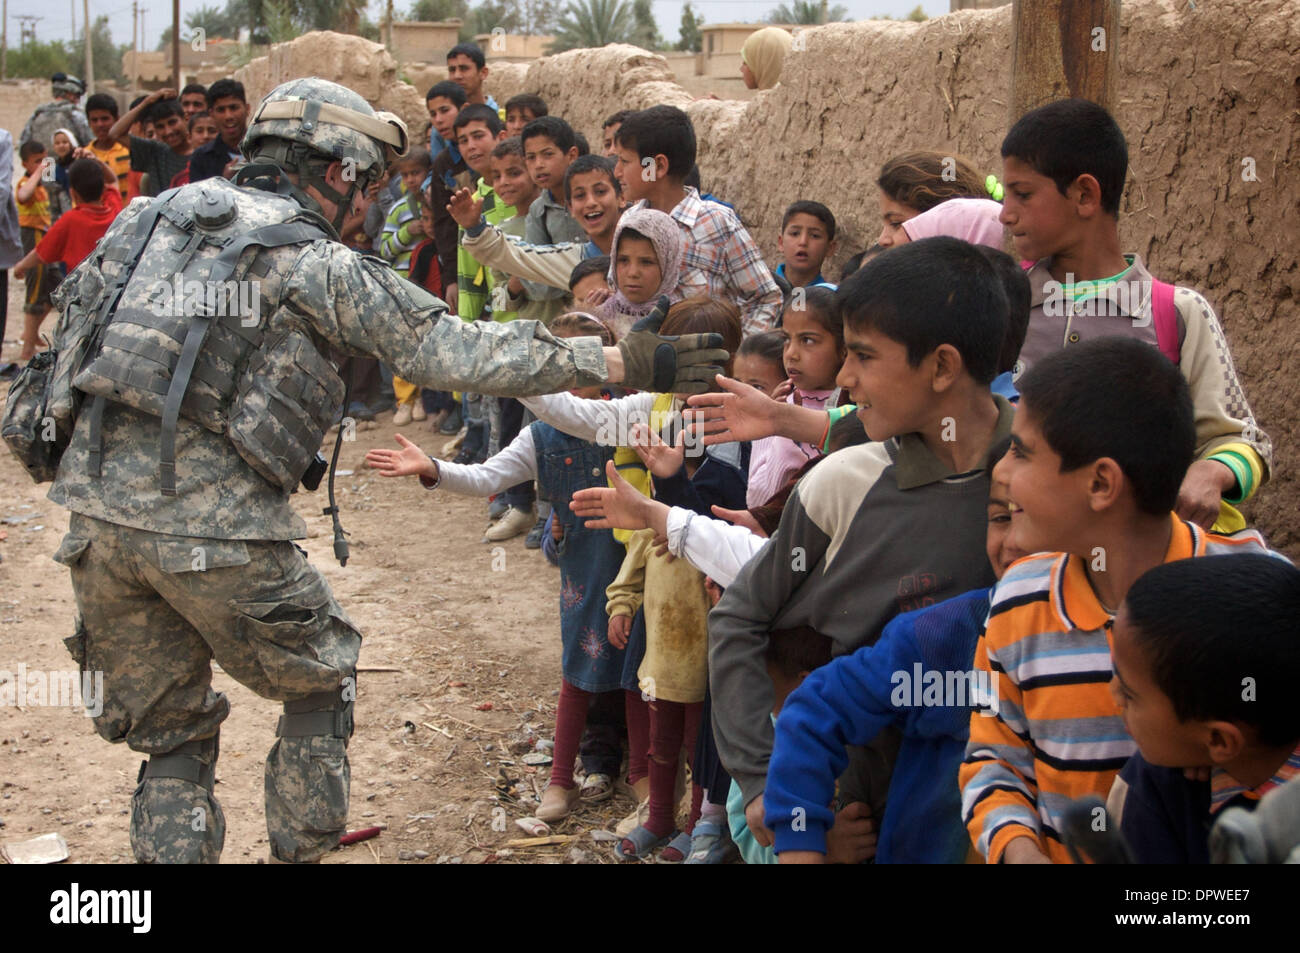 Mar 30, 2009 - Le Balad, de l'Iraq - États-Unis et des soldats de l'armée  irakienne a donné des fournitures d'aide humanitaire aux Irakiens dans un  village au sud de Balad en